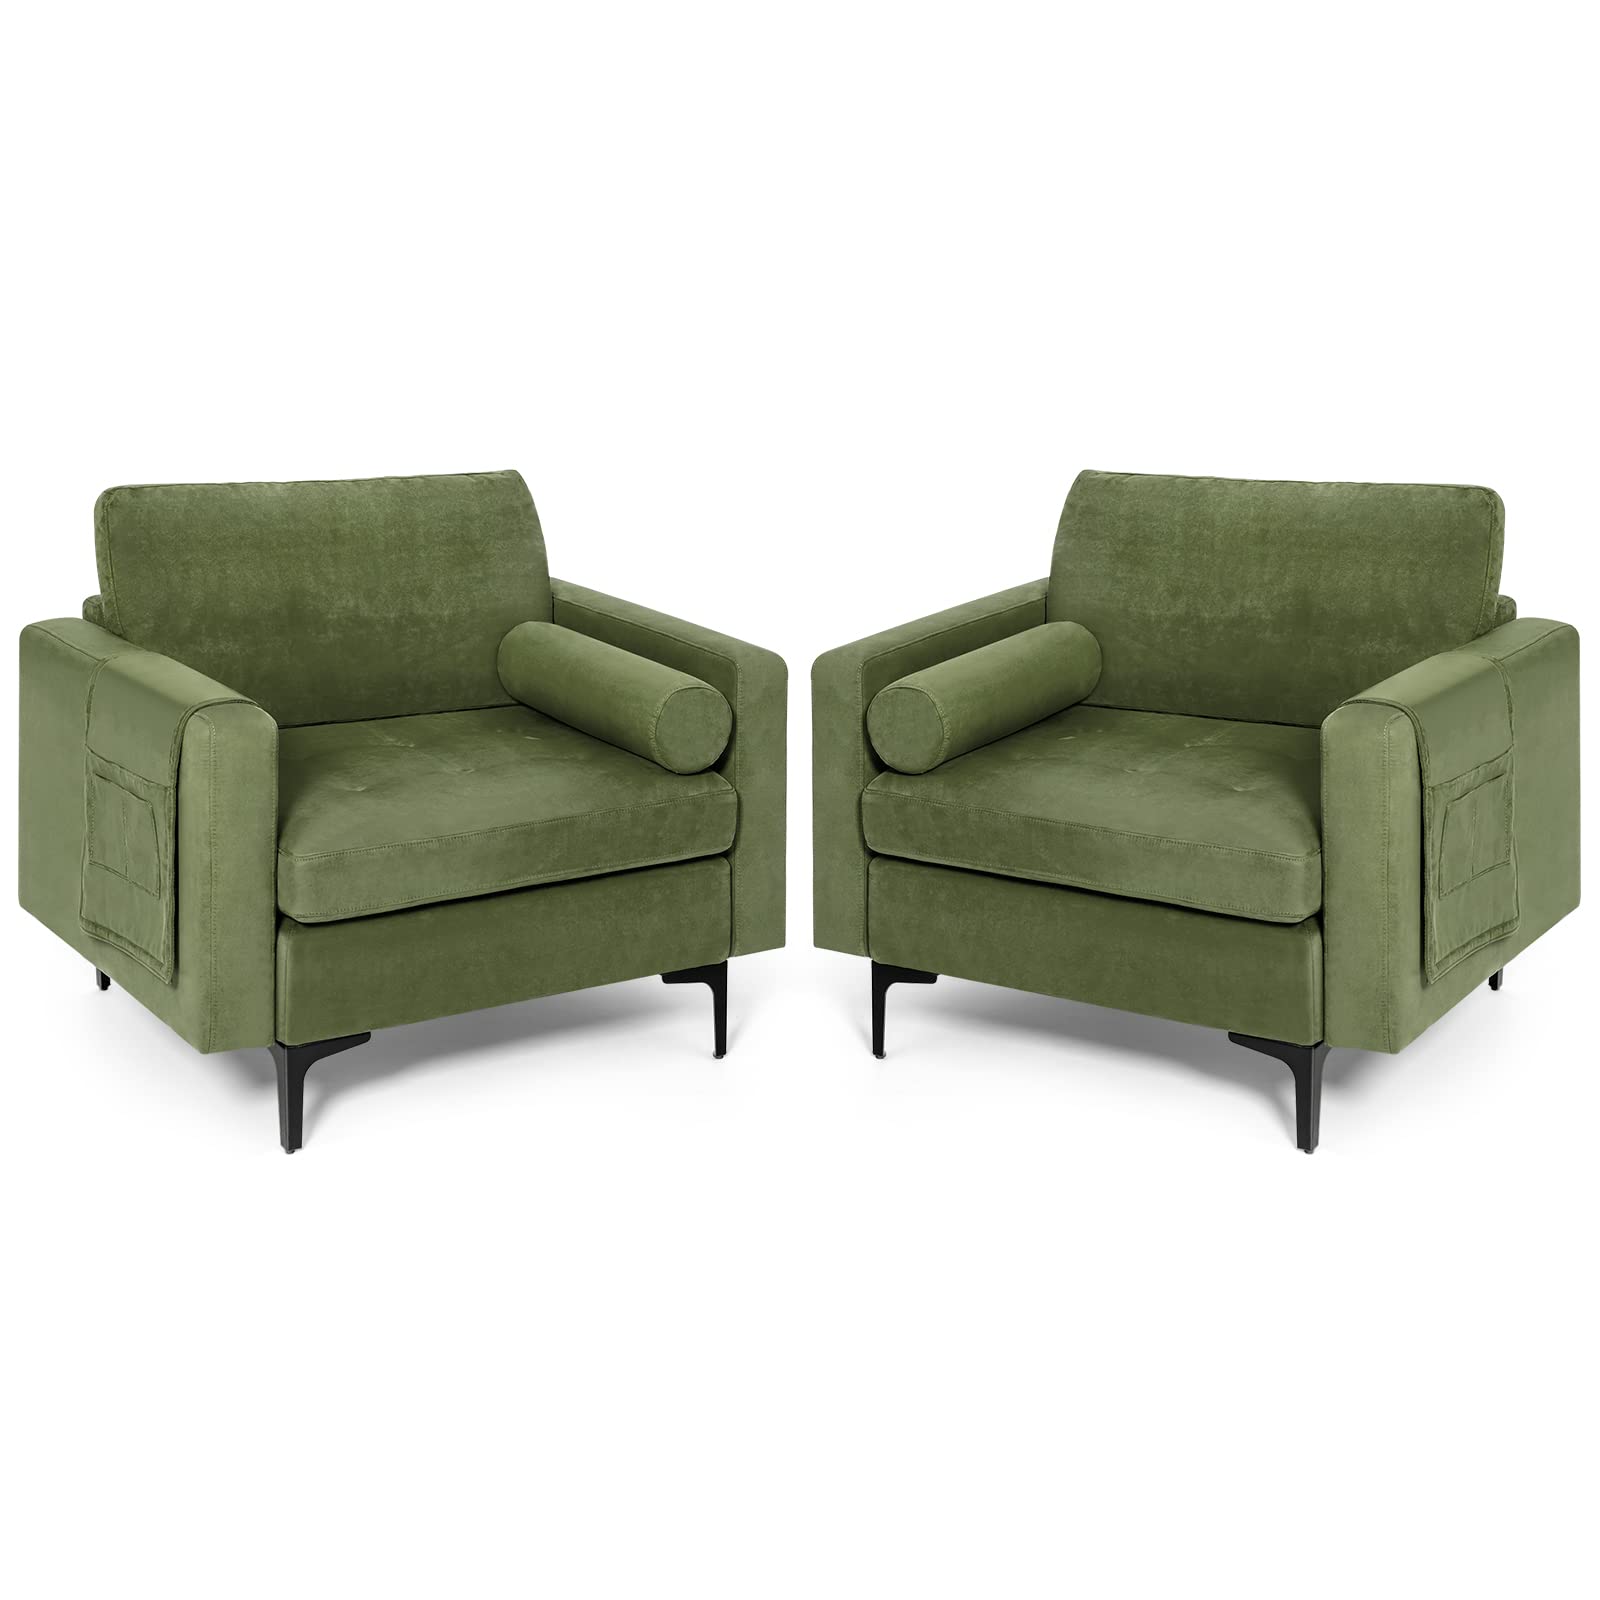 Giantex Sofa Chair, Accent Armchair w/Comfy Cushion